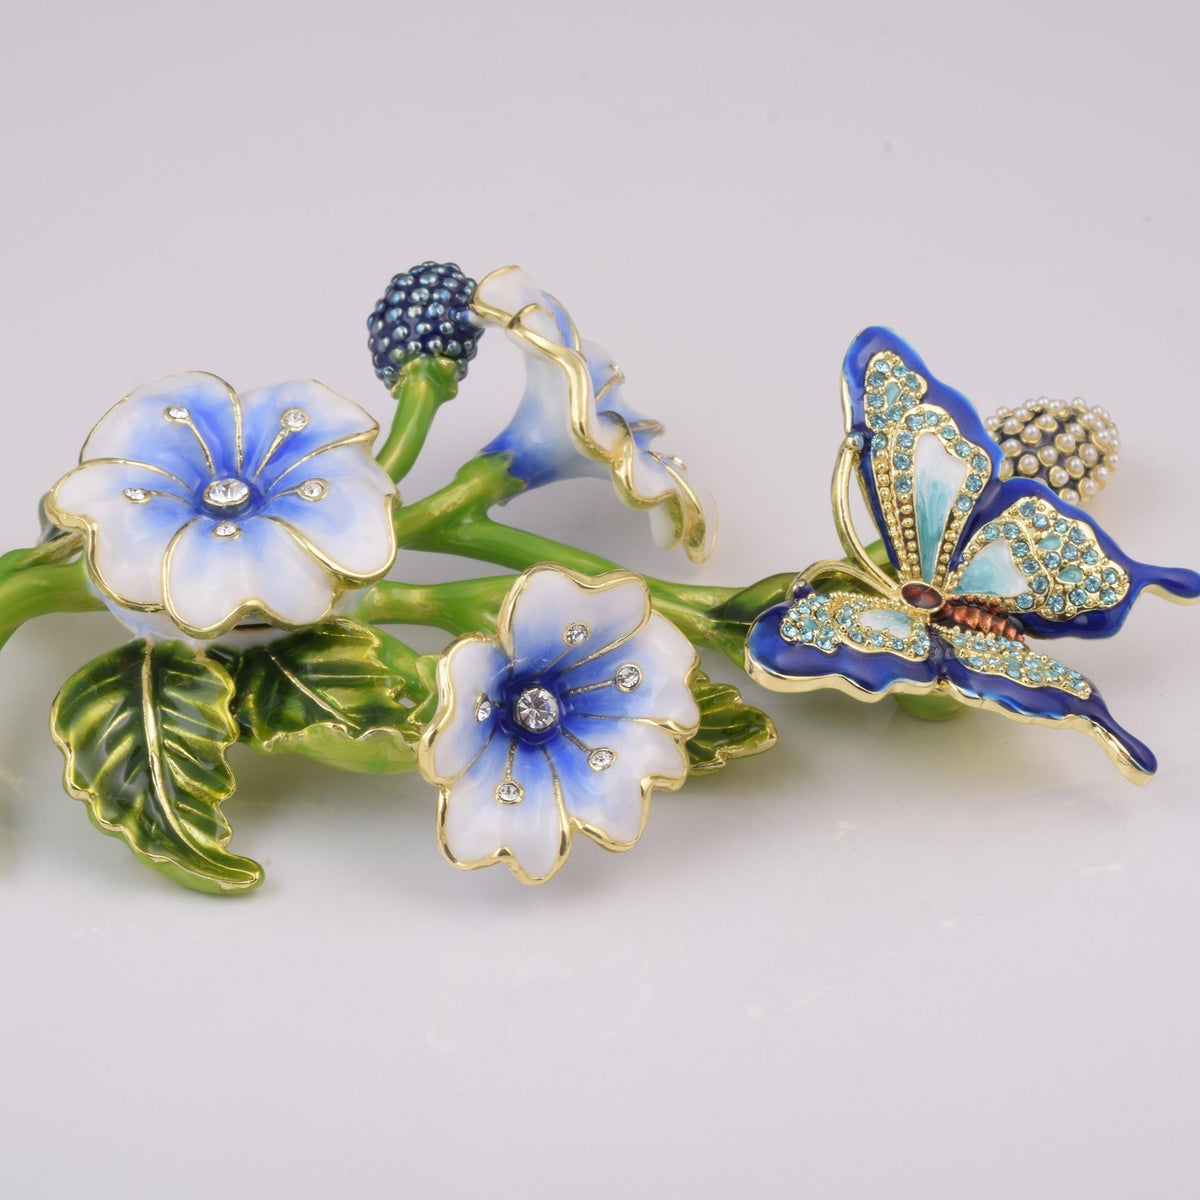 Blue Butterfly on Flowers